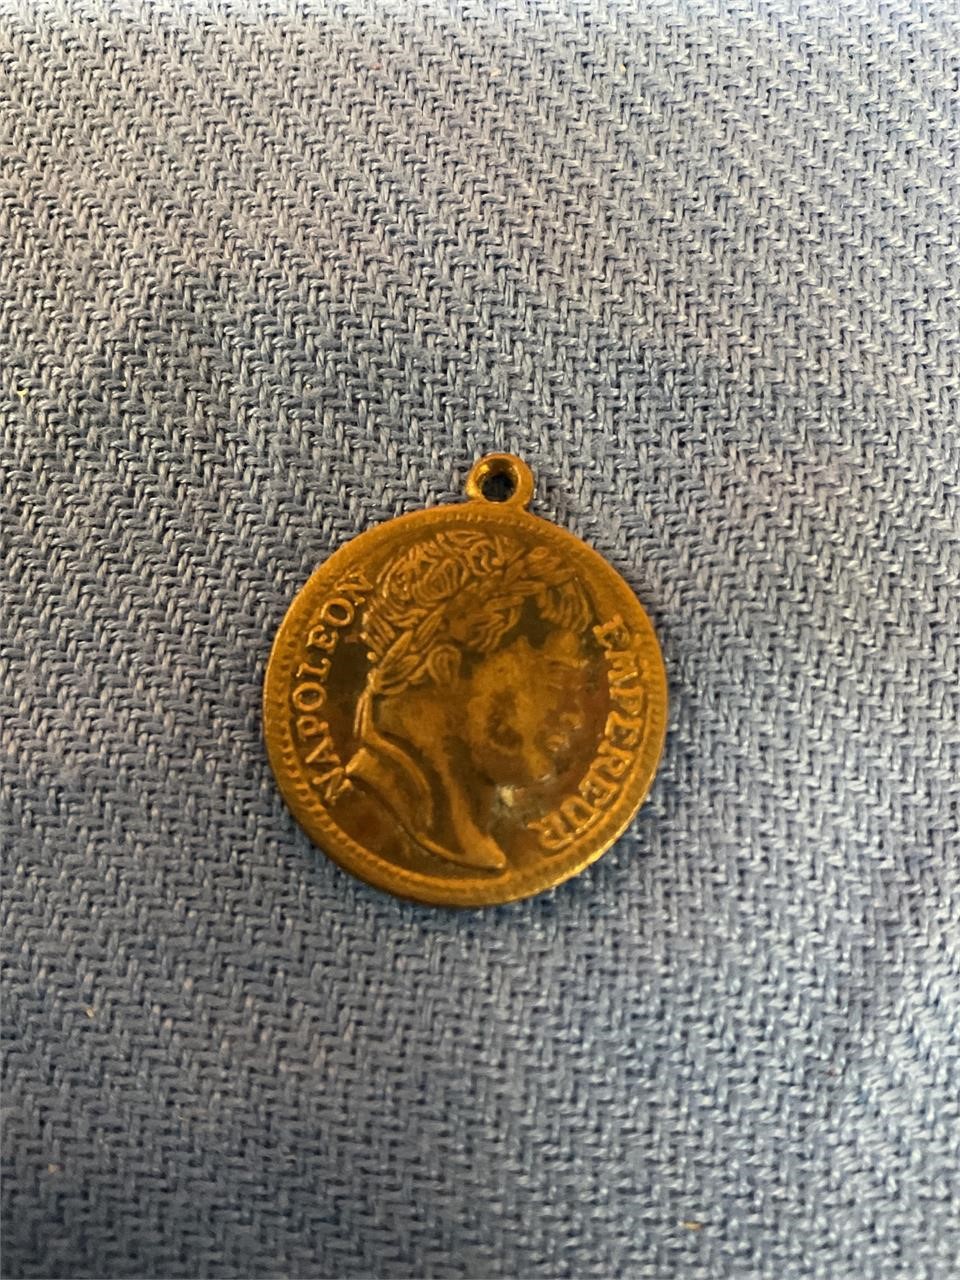 Napoleon medallion